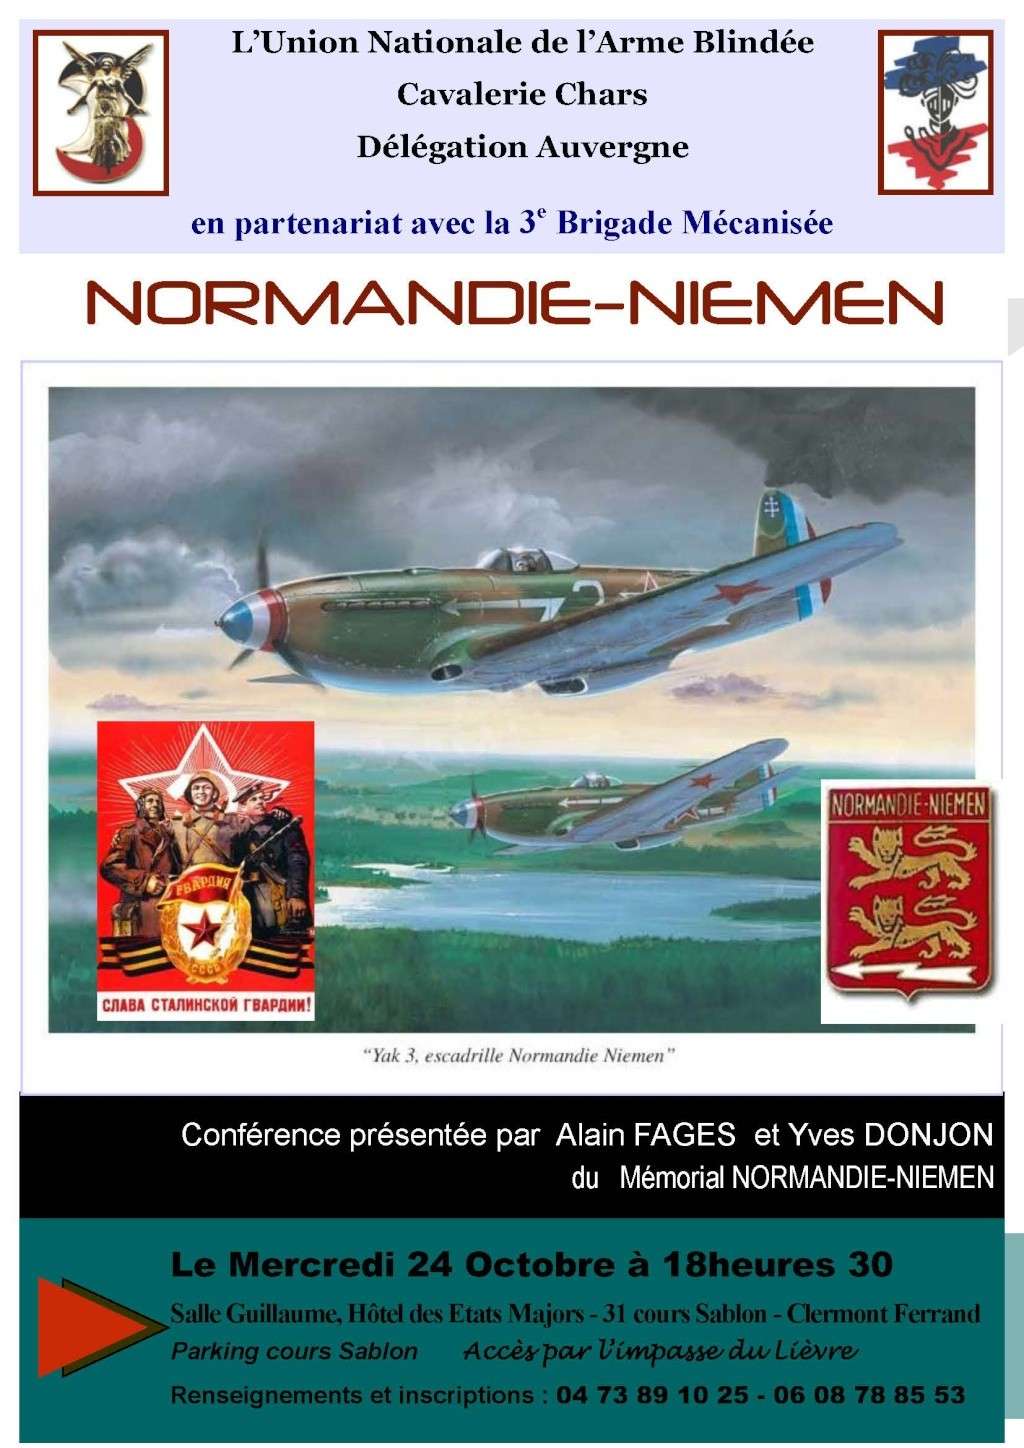 Conférence Normadie-Niemen à Clermont Ferrand le 24 octobre Affich12